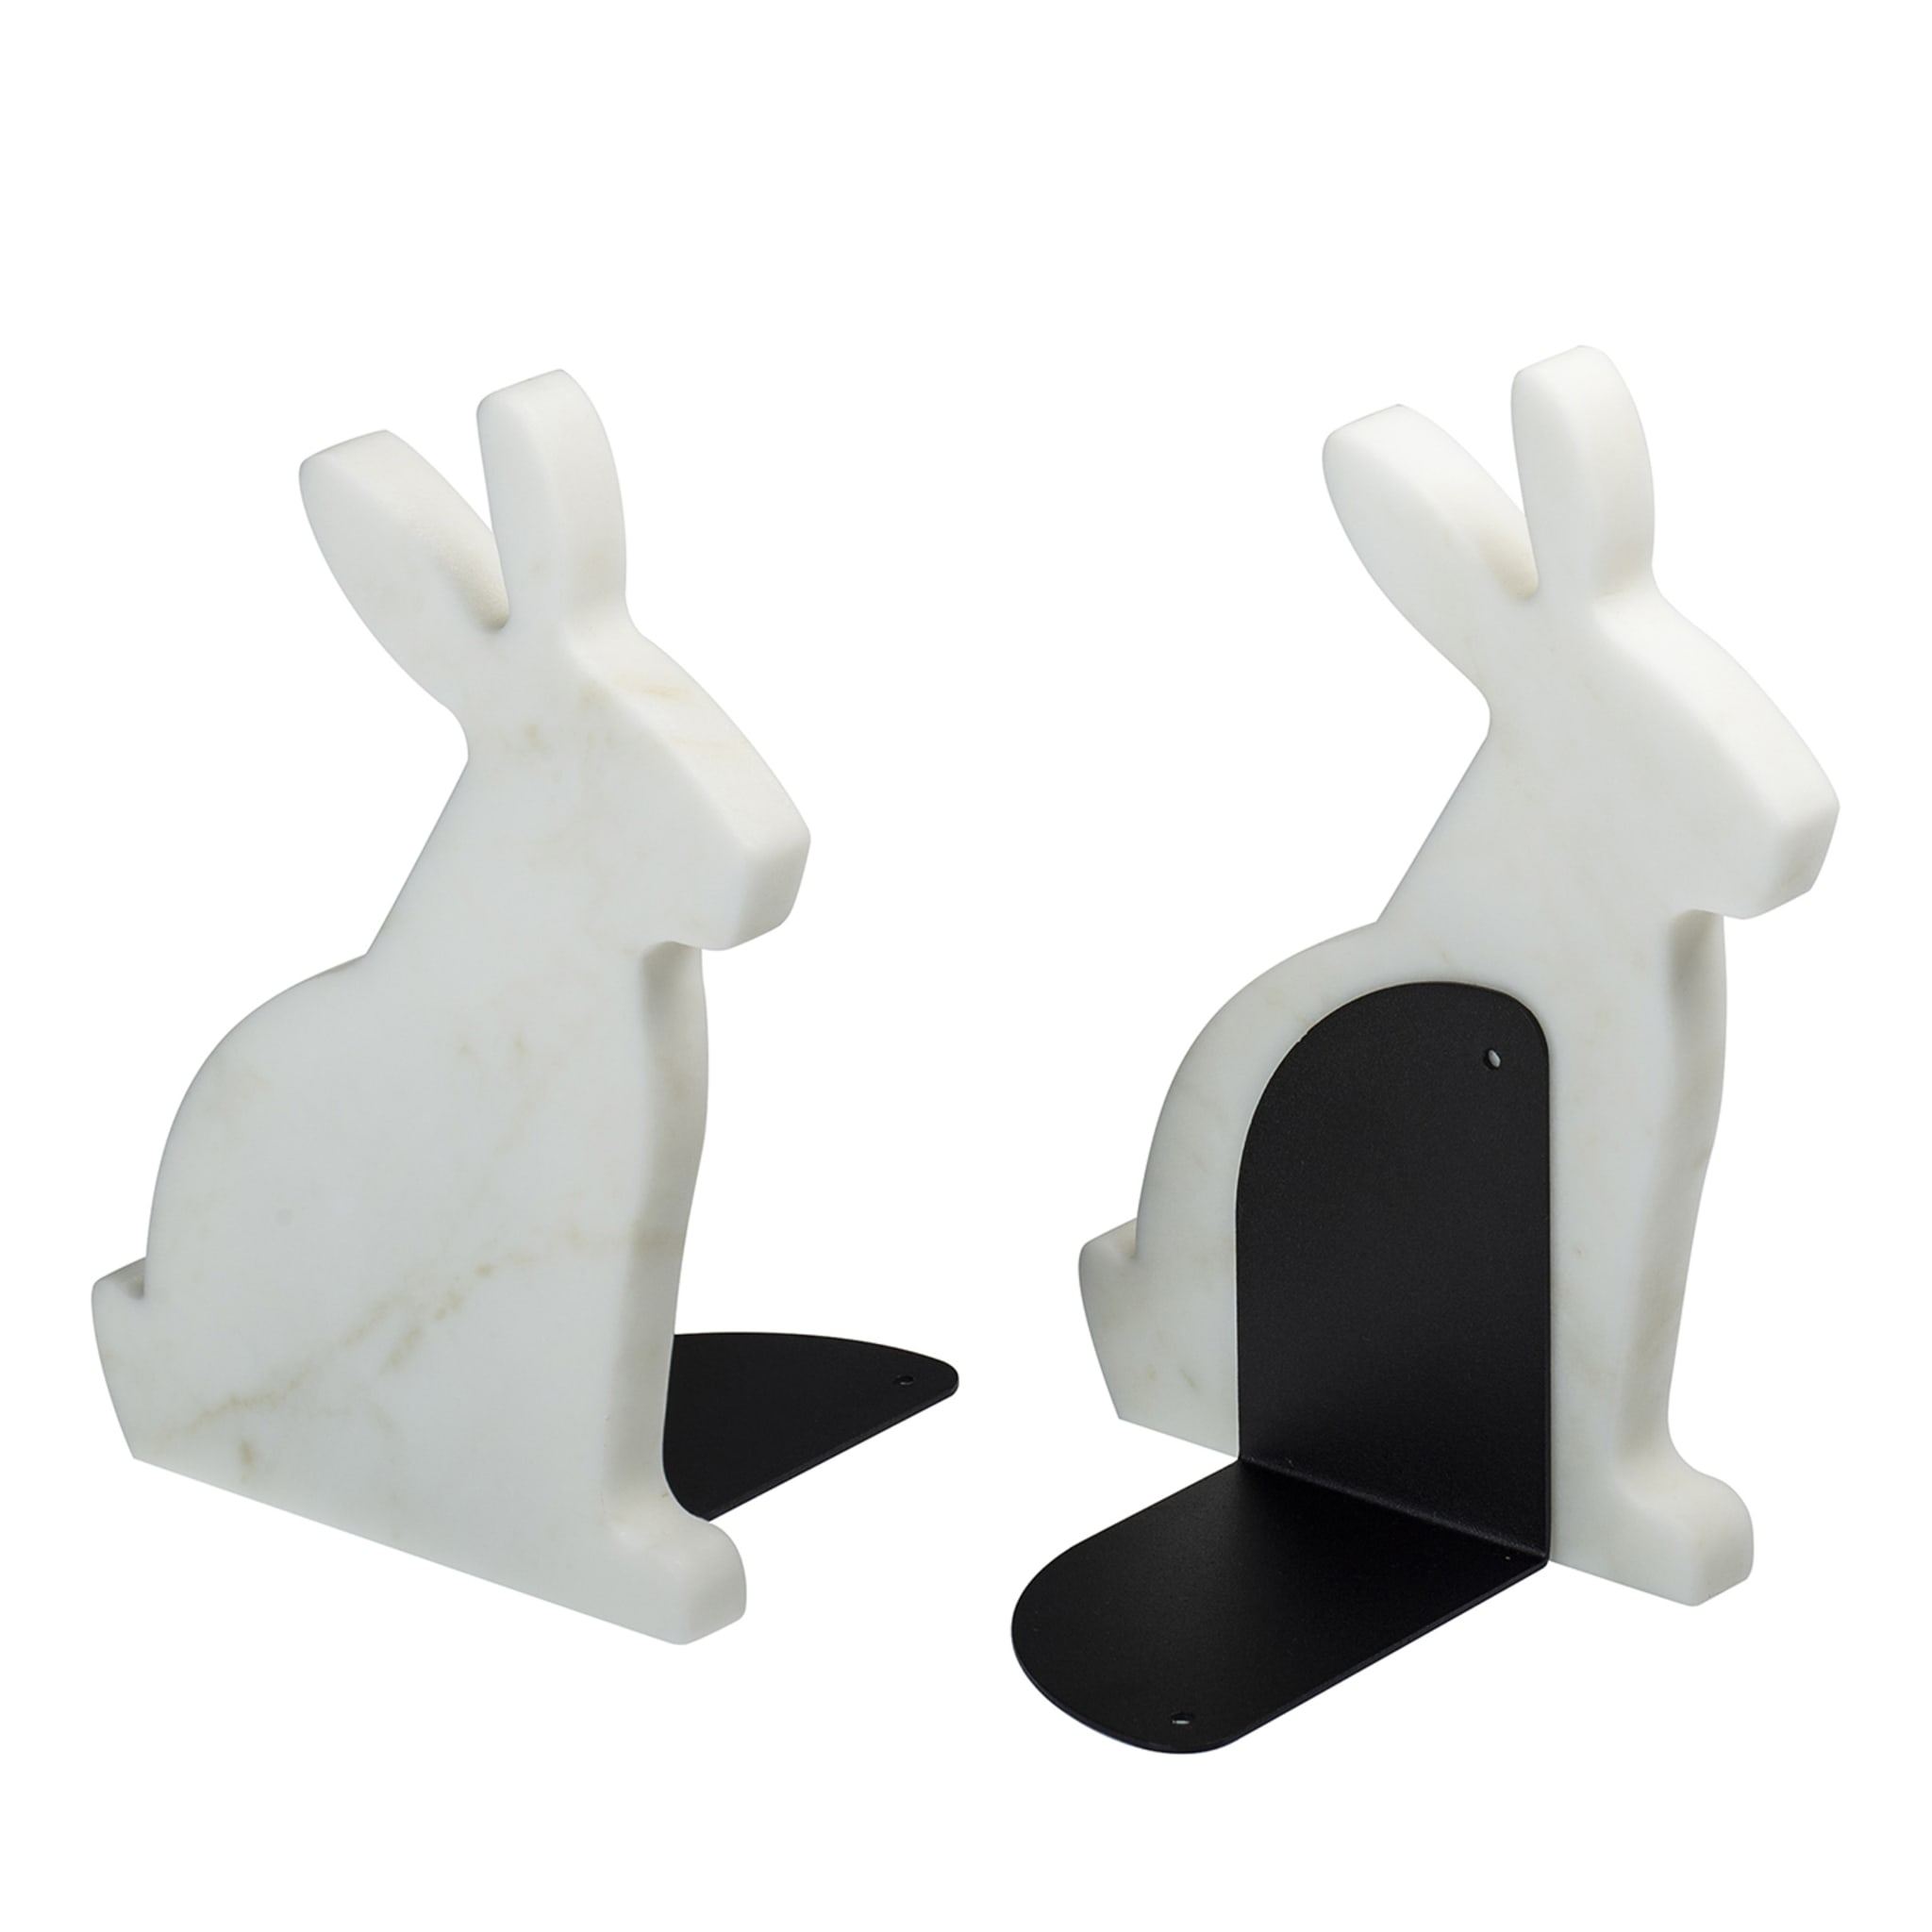 Juego de 2 sujetalibros de carrara blanca Bunny by Alessandra Grasso - Vista principal